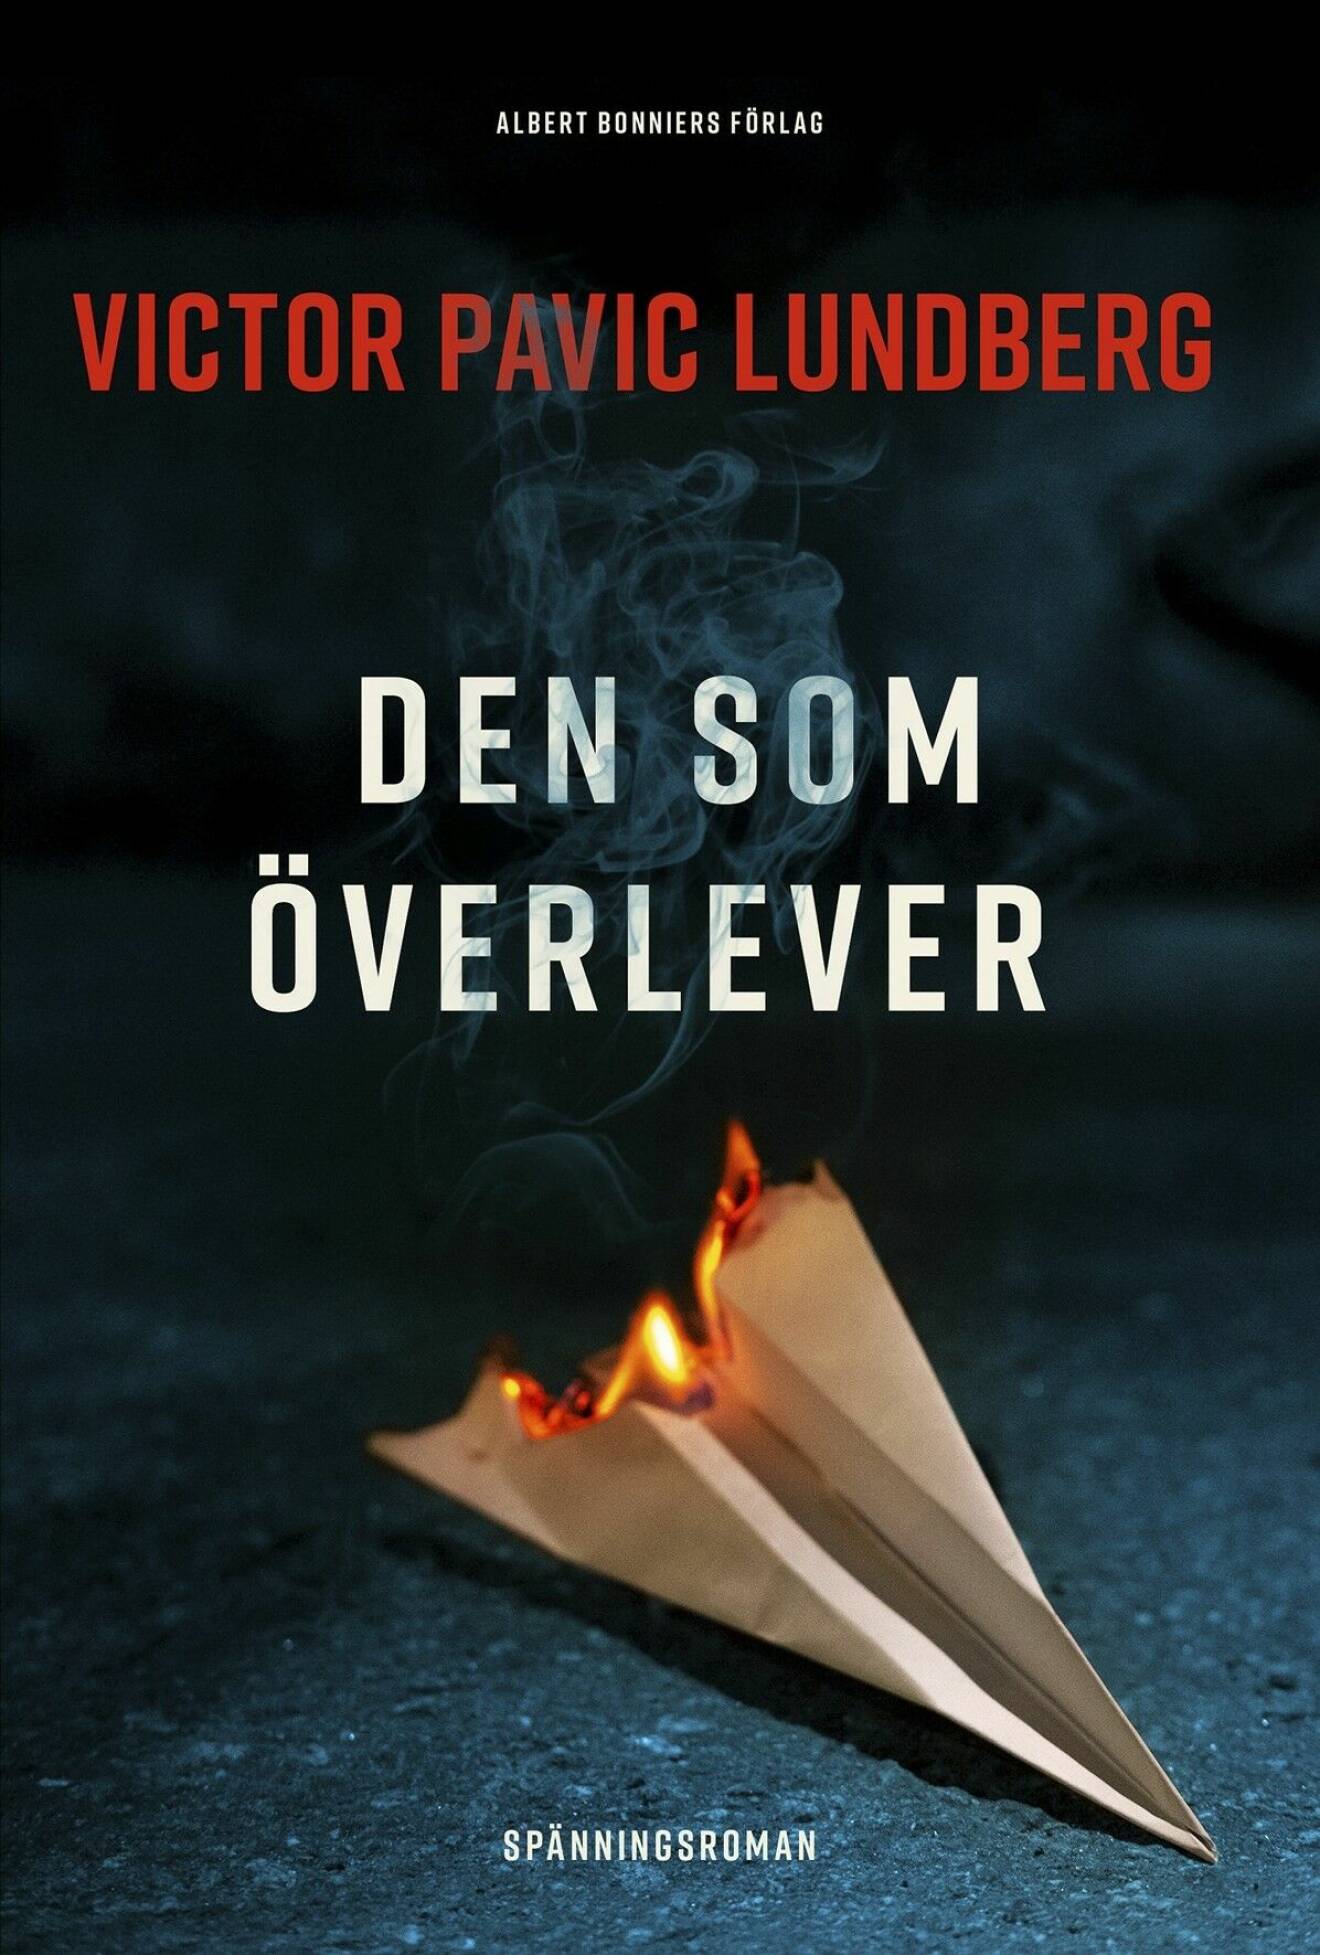 Den som överlever av Victor Pavic Lundberg.